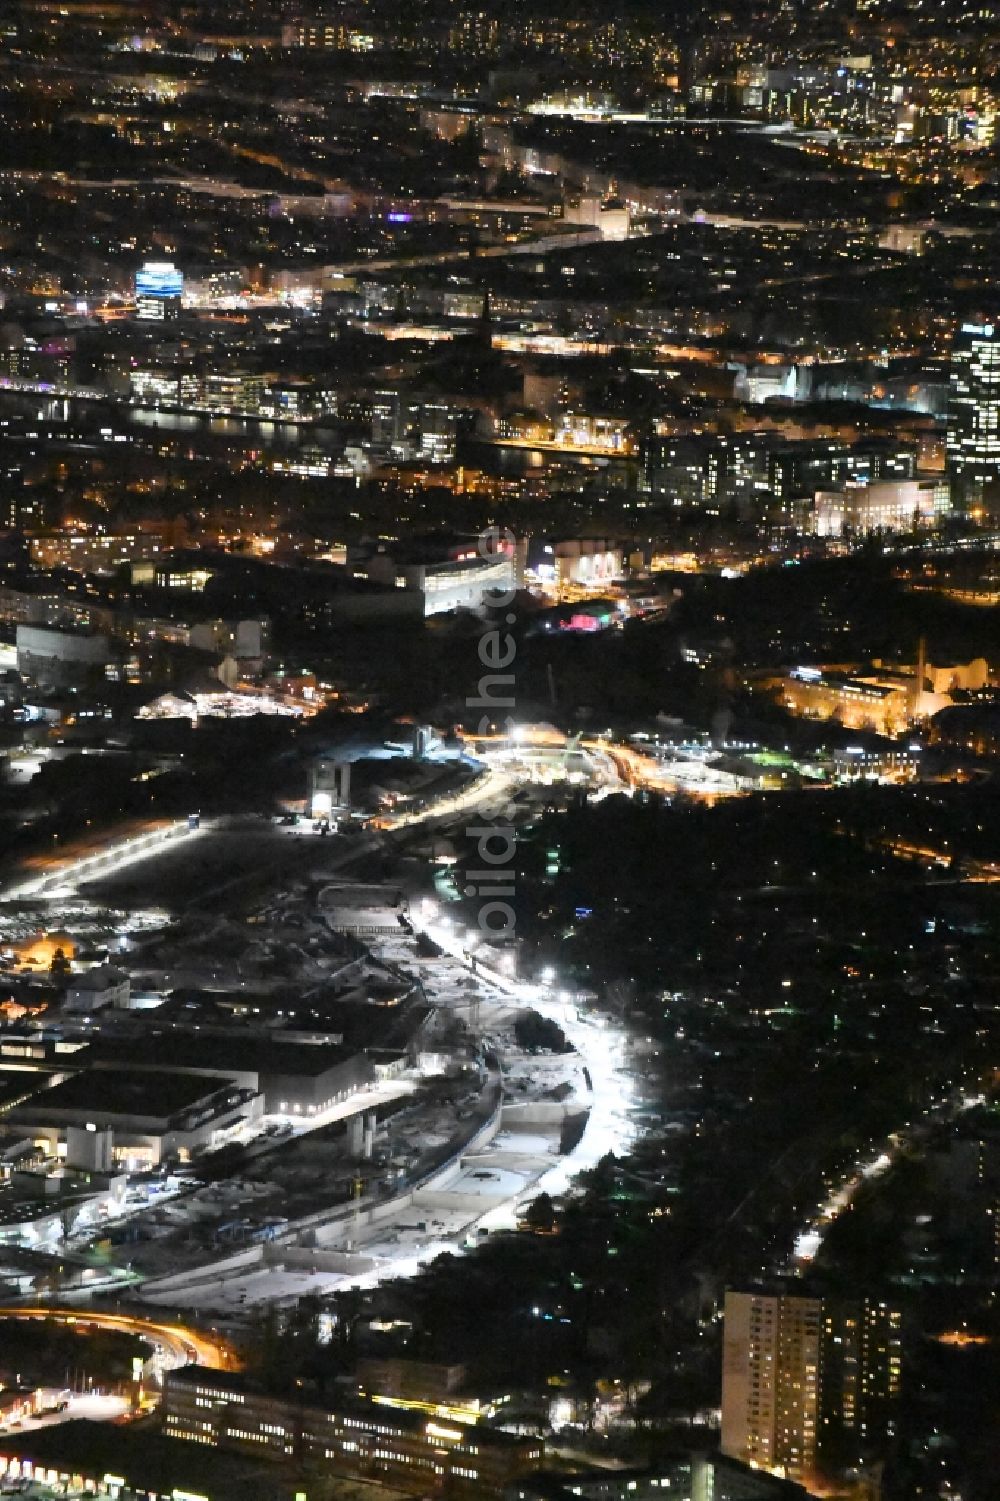 Nacht-Luftaufnahme Berlin - Nachtluftbild der Baustellen zum Neubau der Verlängerung der Stadtautobahn A100 in Berlin Neukölln